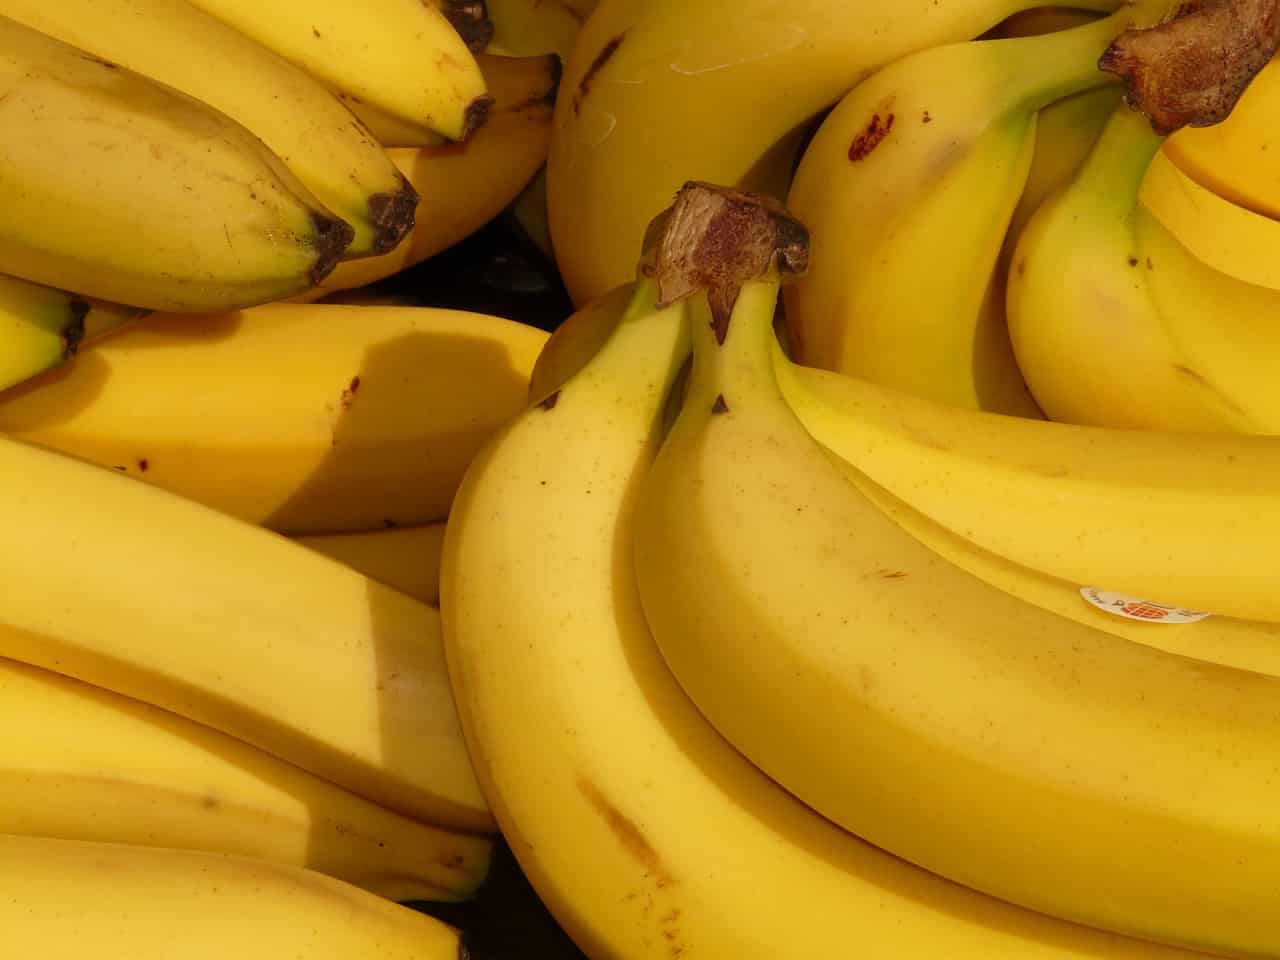 Polizia fa mangiare a un ladro 96 banane per recuperare preziosa collana che aveva ingoiato